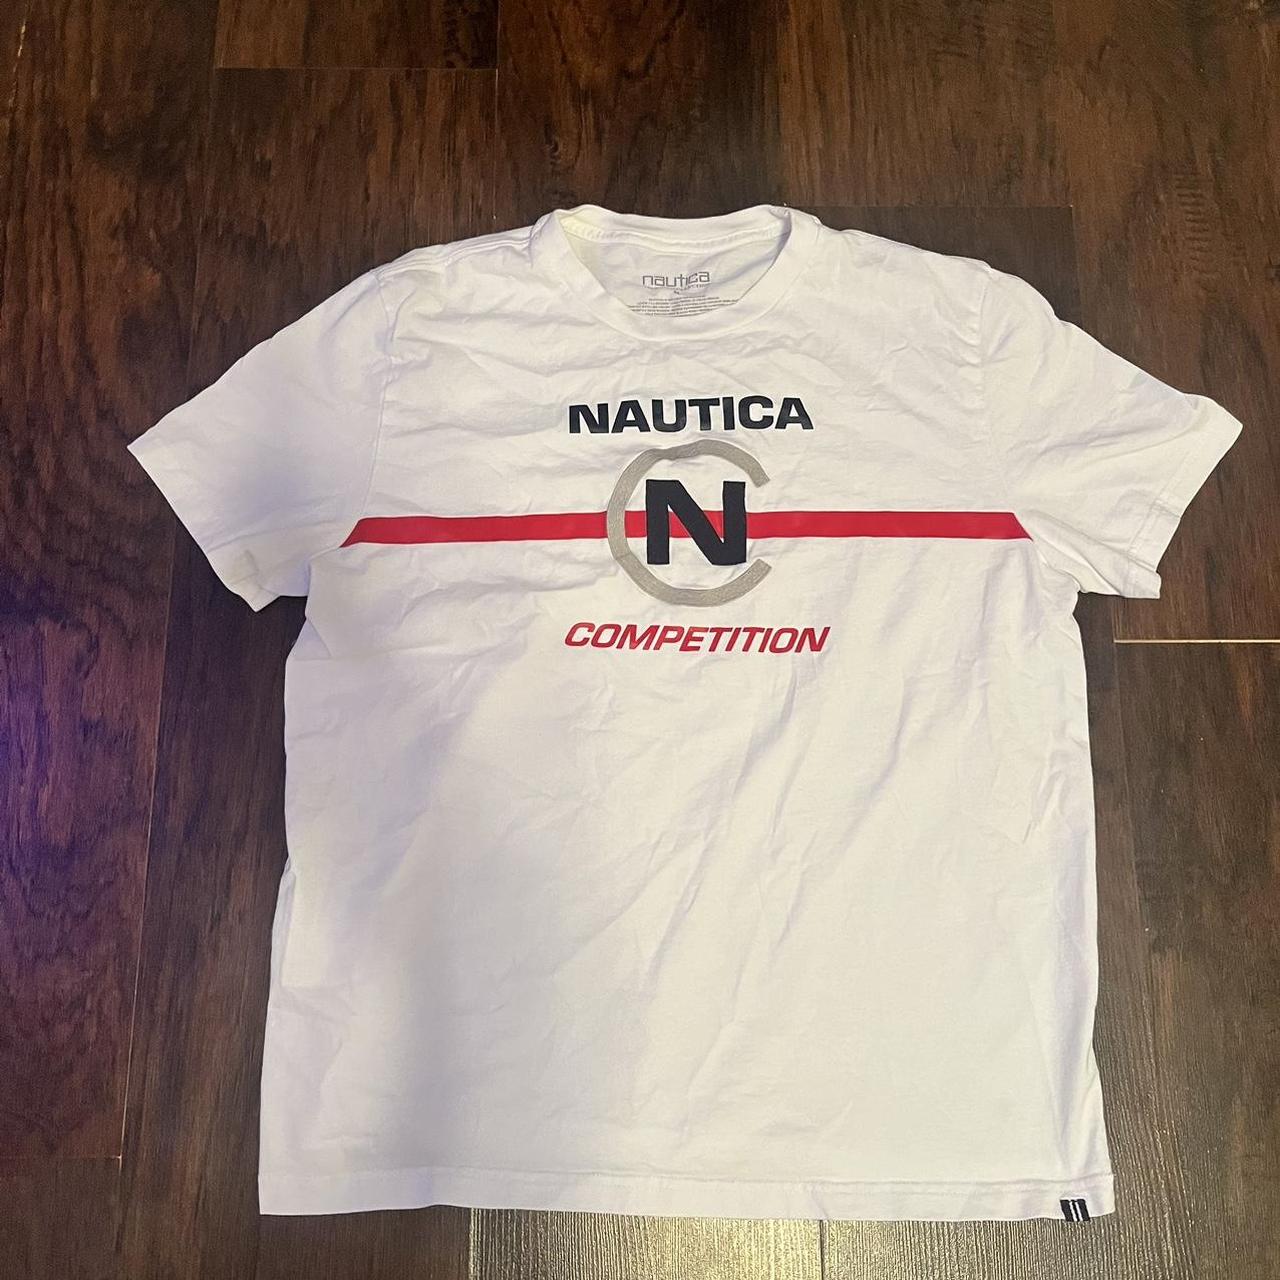 Nautica White Red T-Shirt #nautica #nauticashirt - Depop